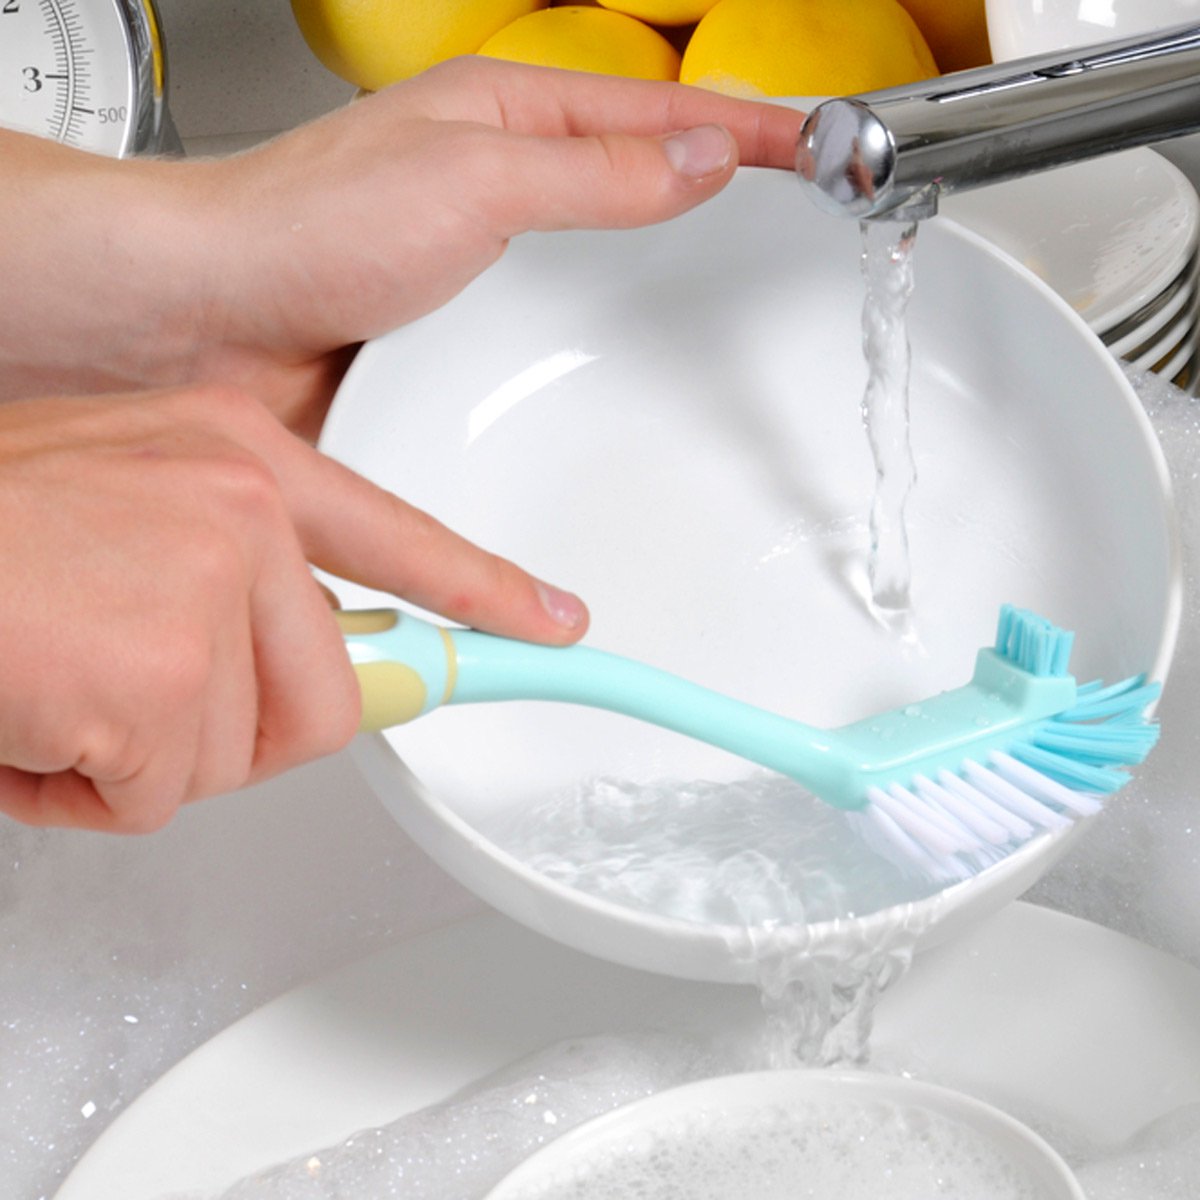 Для очистки и дезинфекции туалетного ершика используют бытовую химию и народные средства: уксус, соду, соль, лимонную кислоту